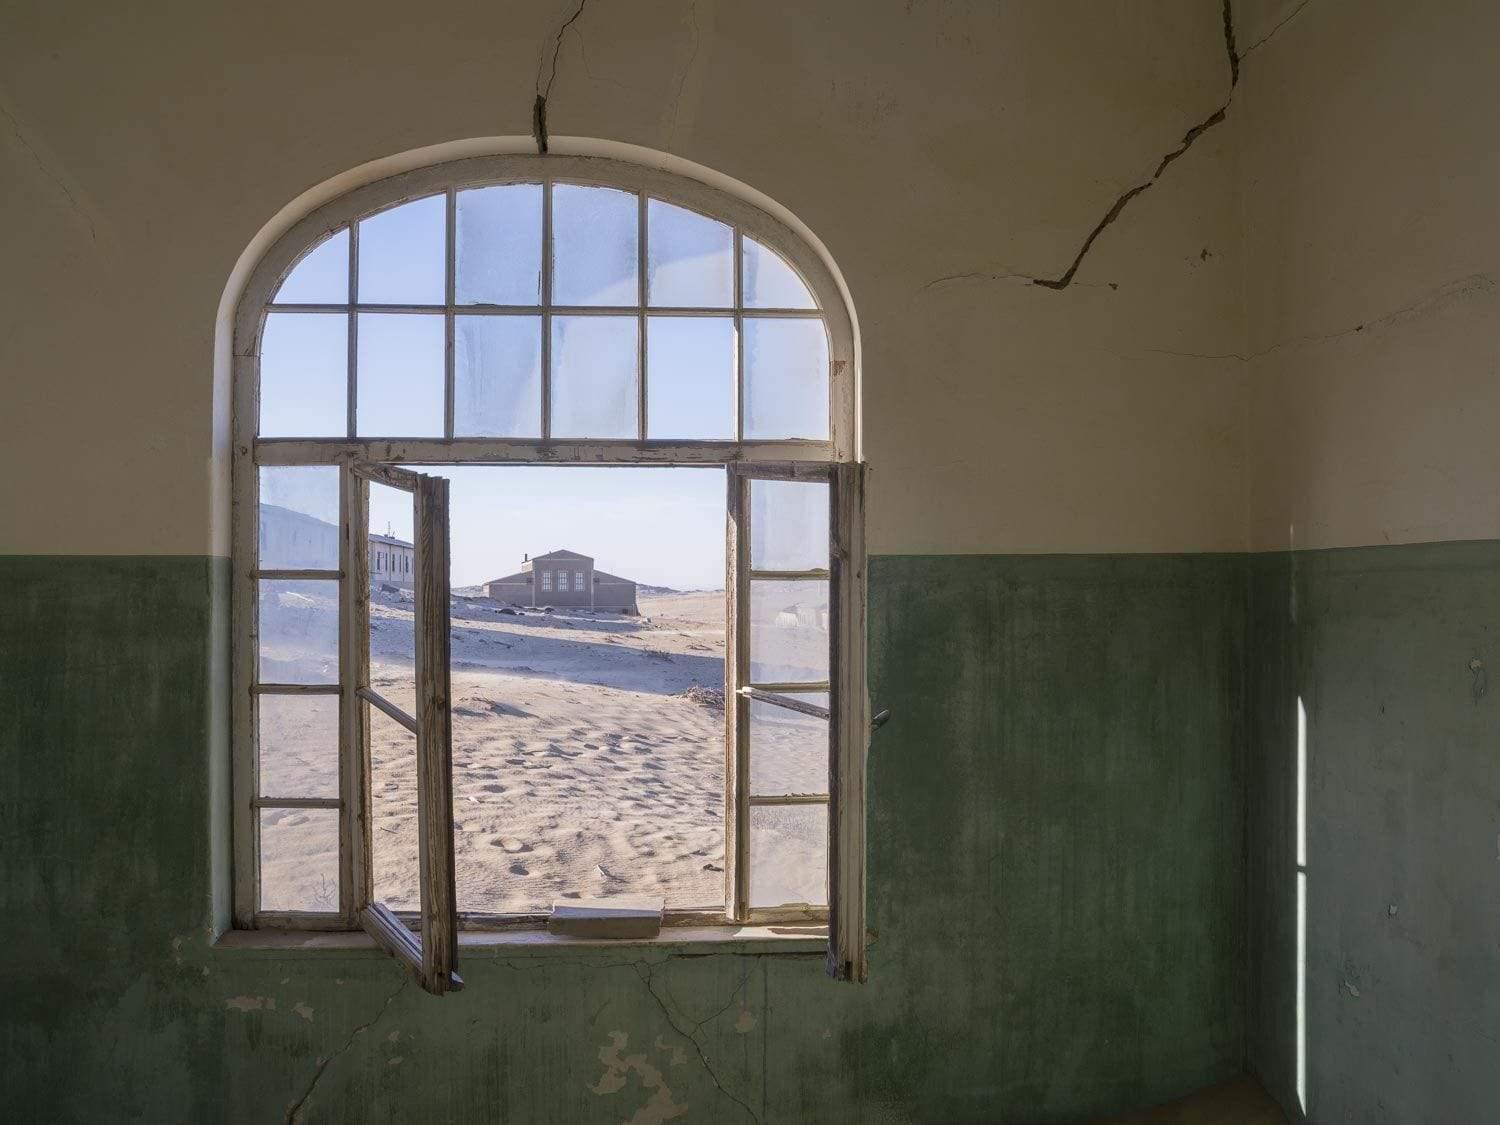 A damaged room with an open window, Kolmanskop #7